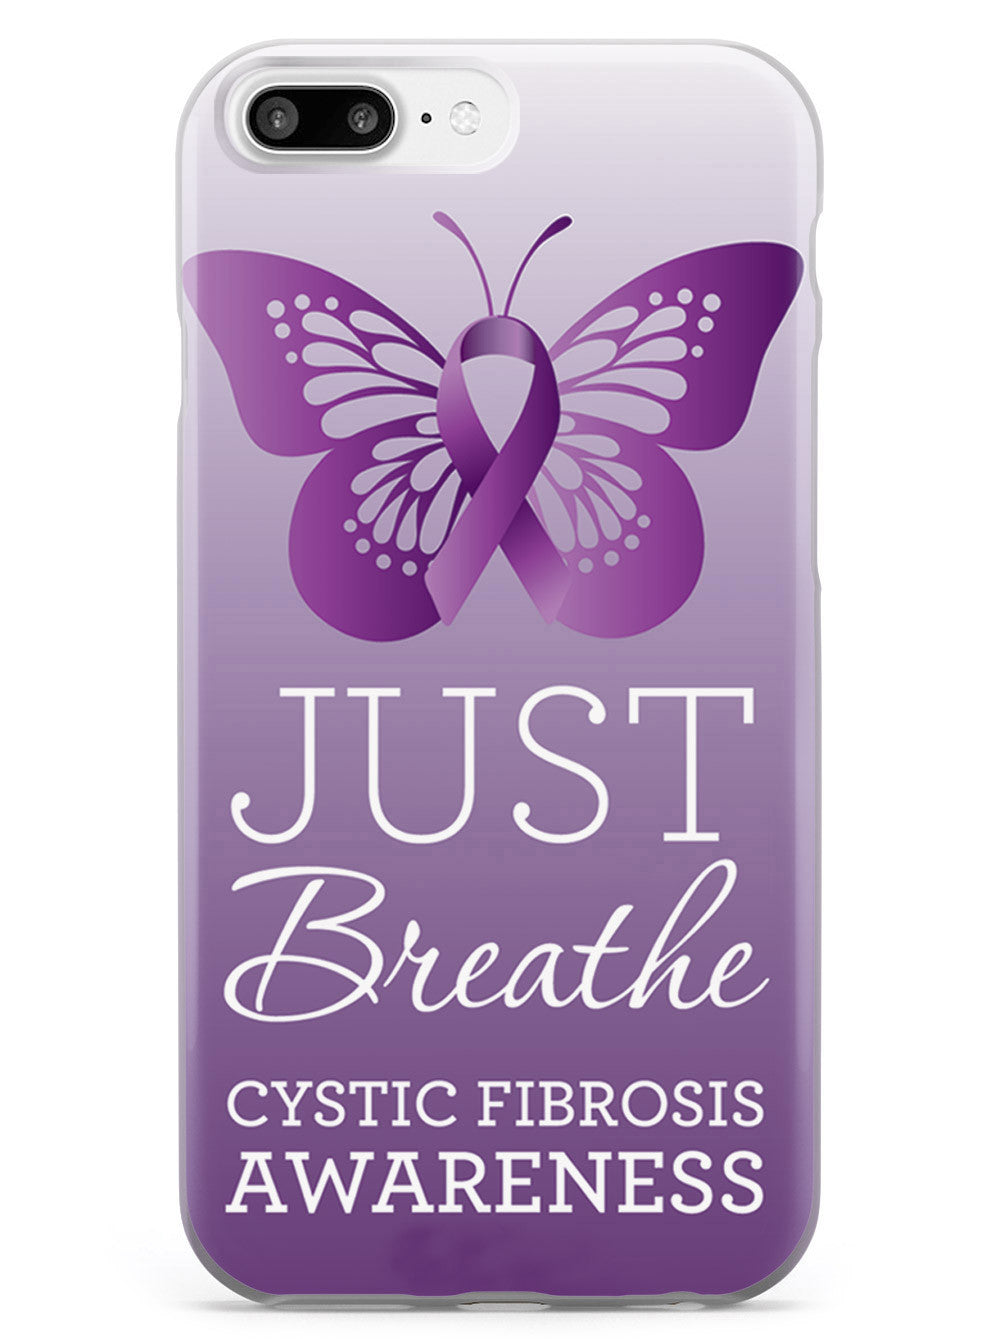 Cystic Fibrosis Awareness Case